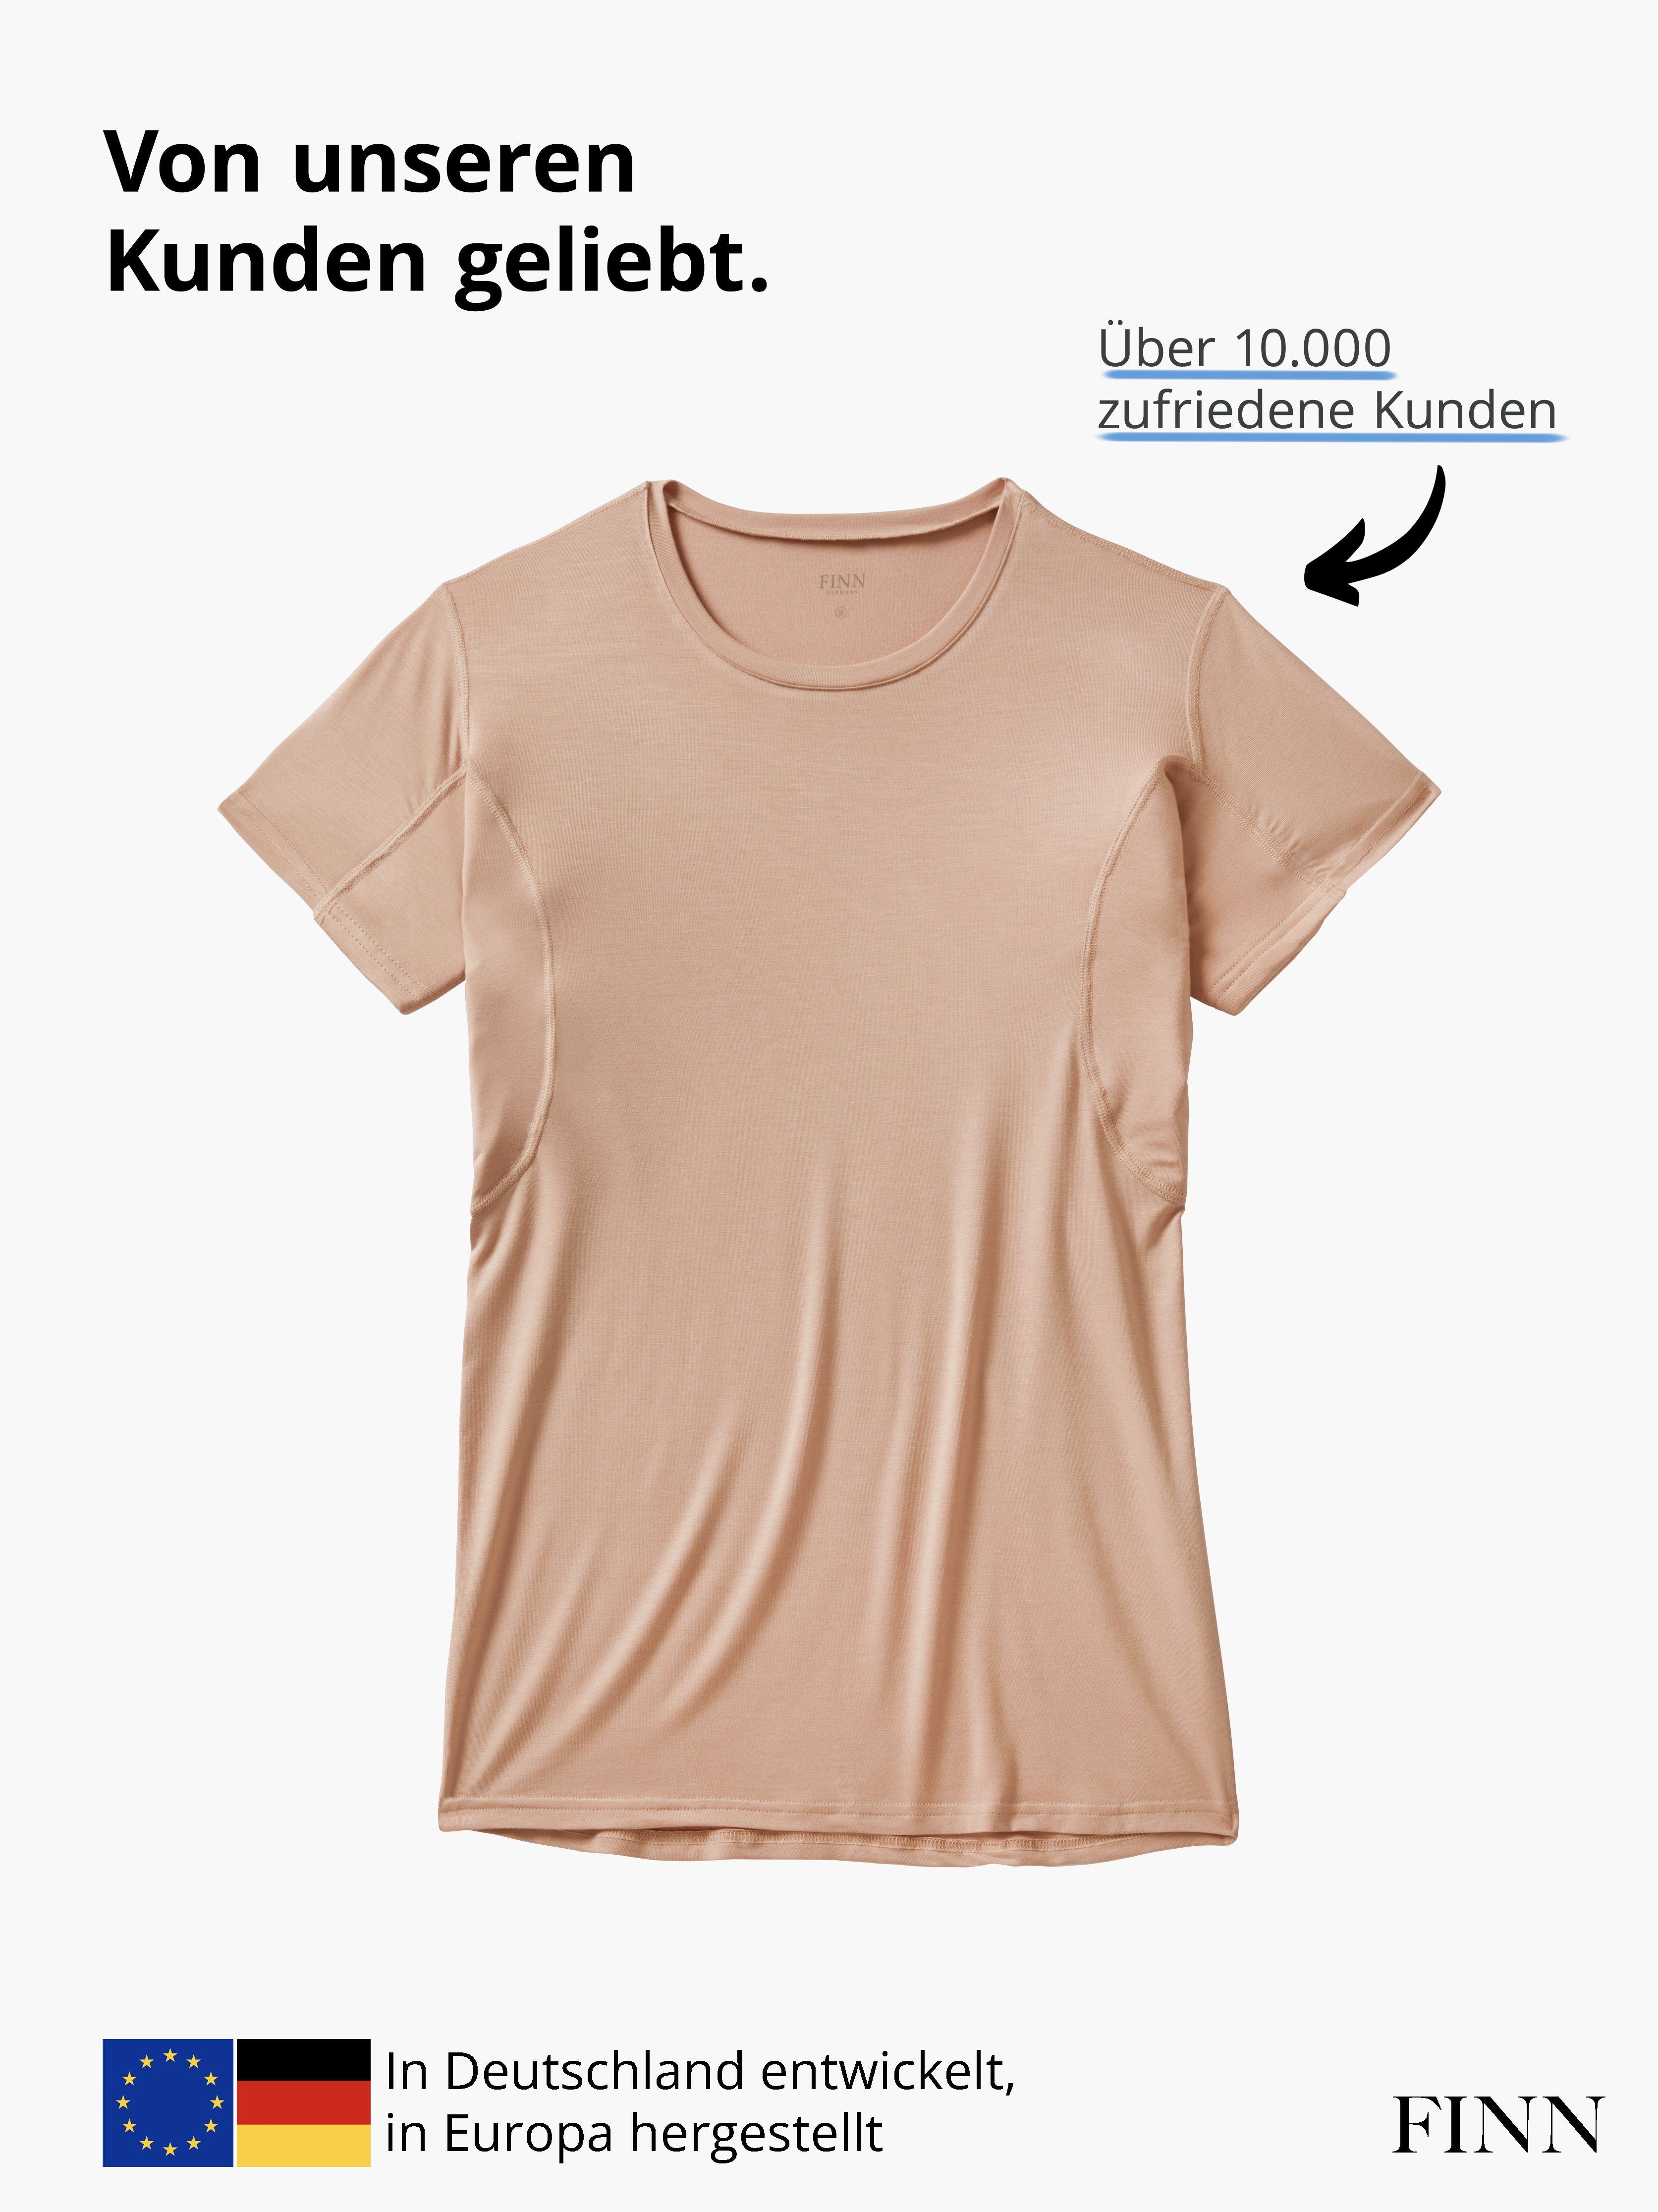 FINN Design Unterhemd Anti-Schweiß 100% Schweißflecken, Rundhals vor garantierte Wirkung Light-Beige Herren mit Unterhemd Schutz